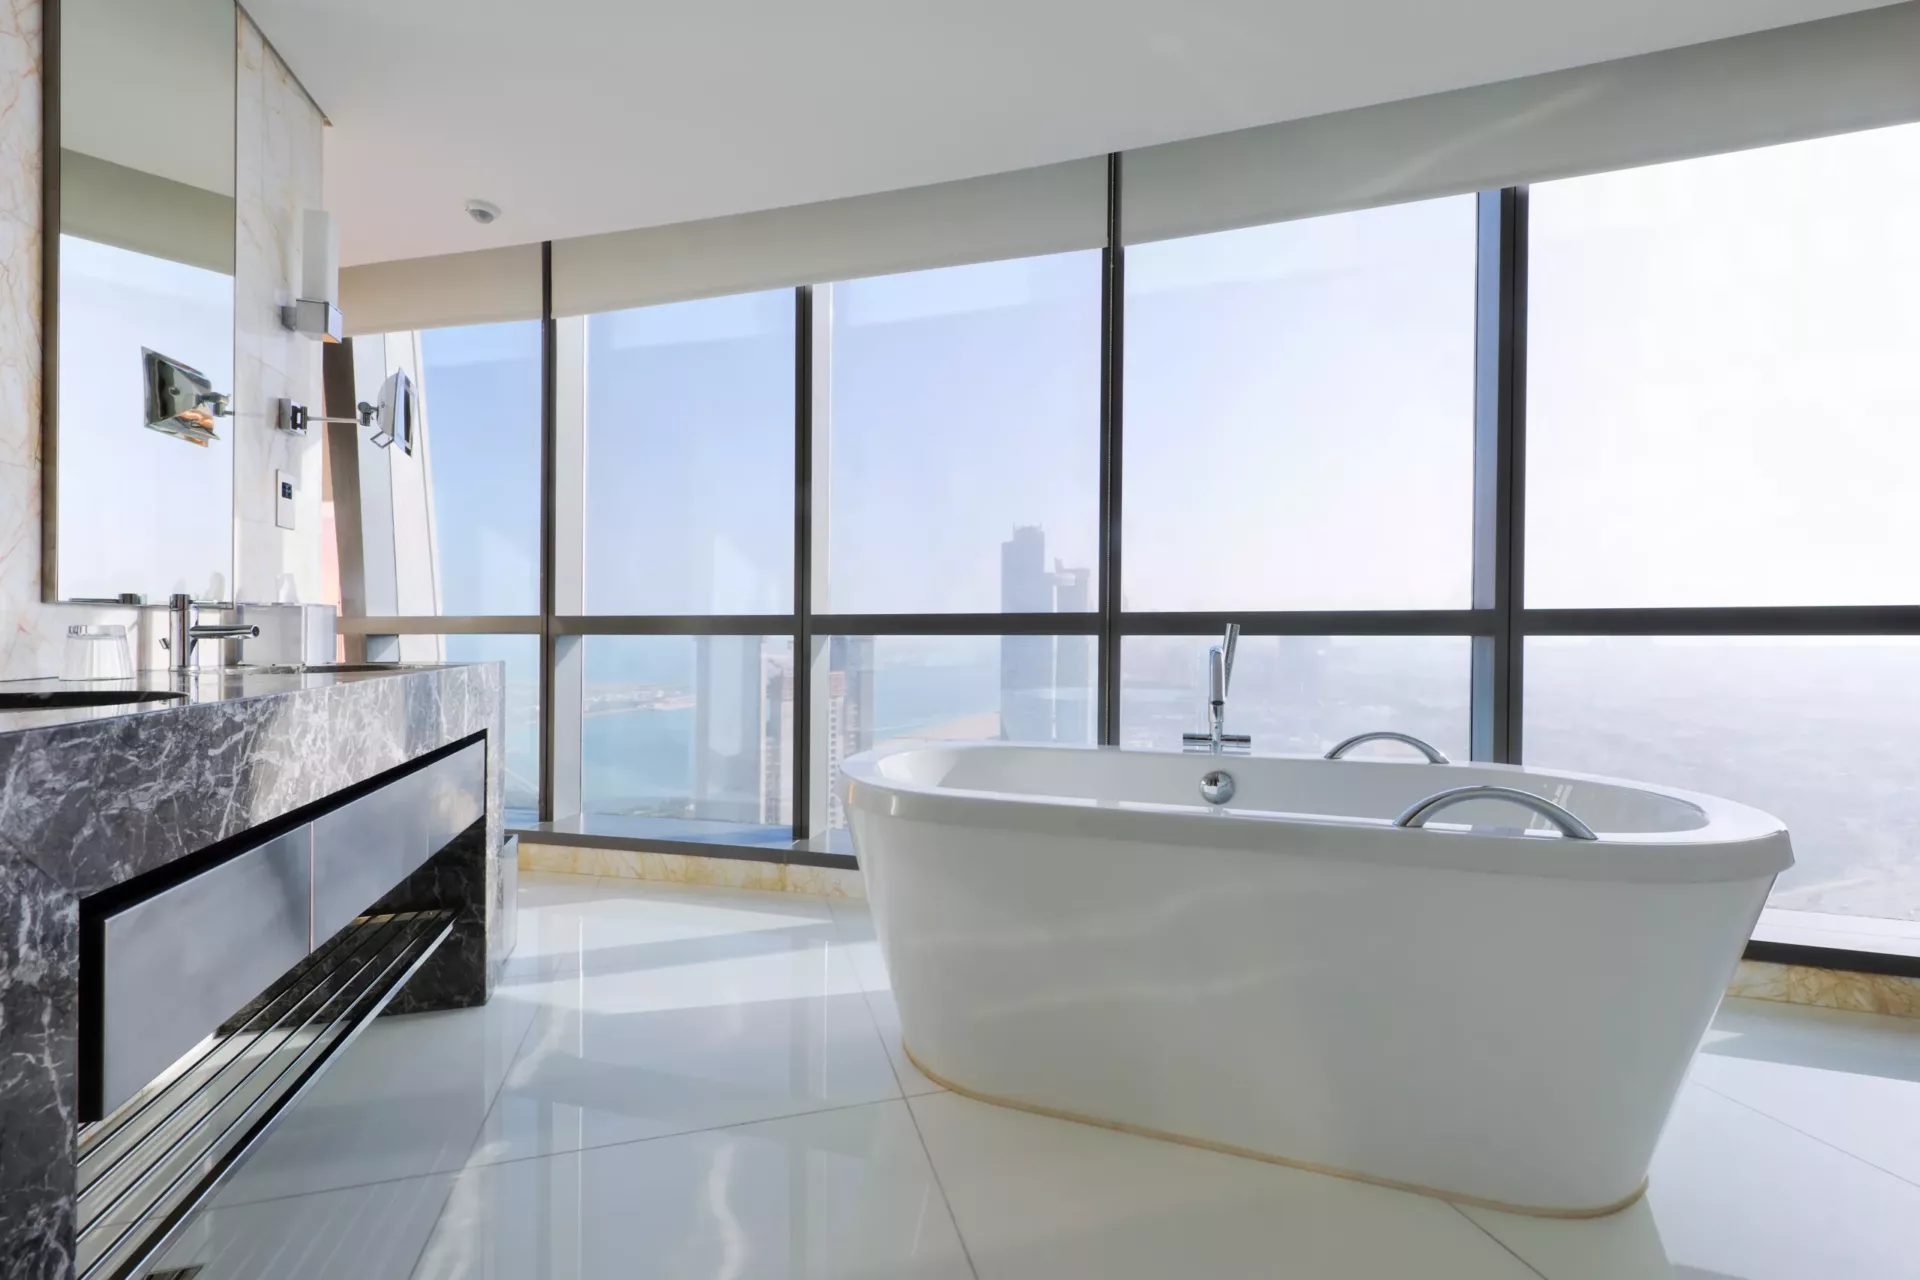 Salle de bains de luxe avec baignoire autonome près des fenêtres dans un gratte-ciel